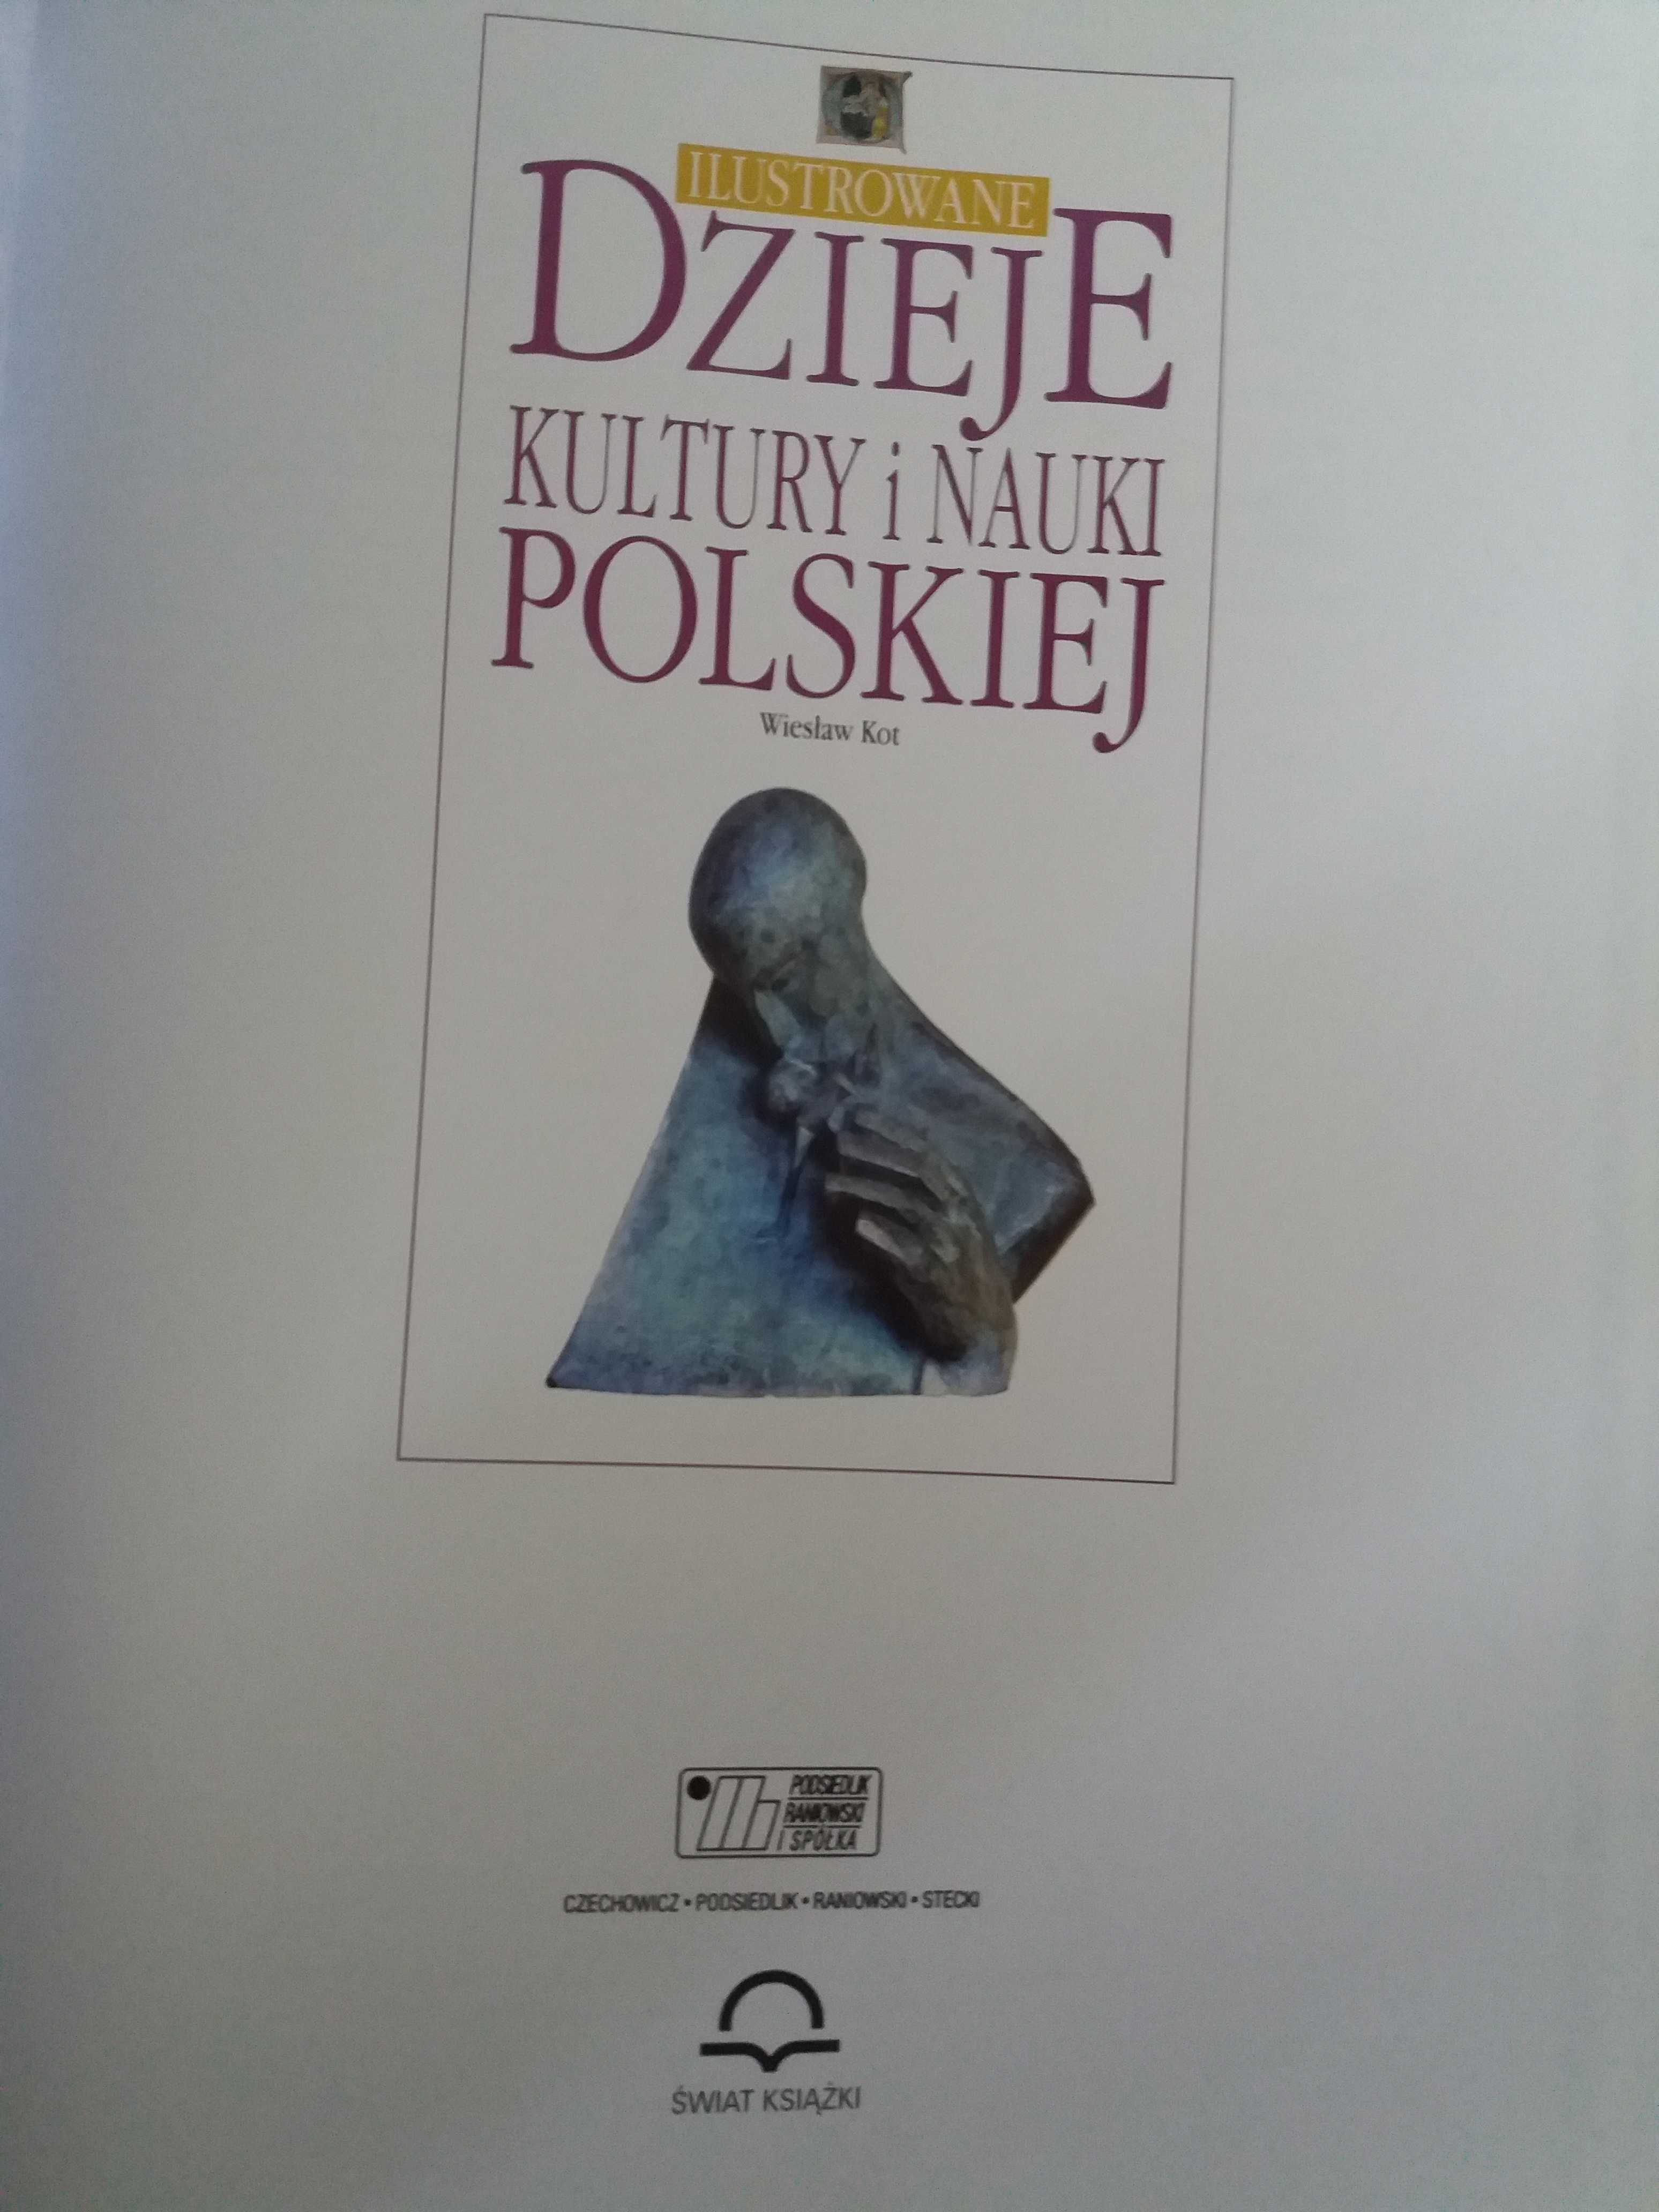 Ilustrowane dzieje kultury i nauki polskiej